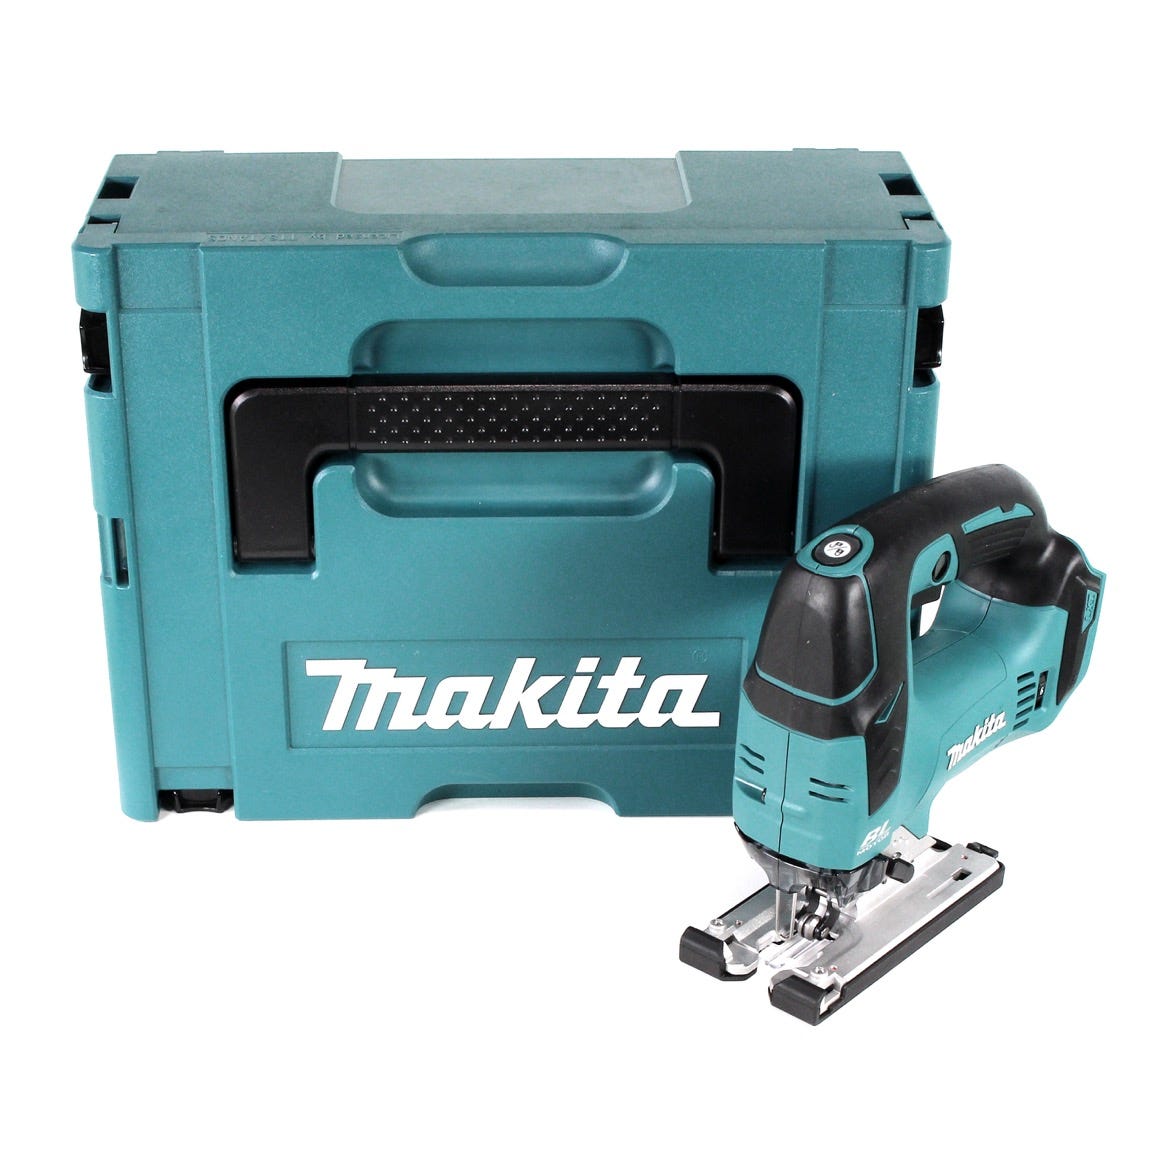 Makita DJV 182 ZJ Scie sauteuse sans fil 18V Brushless 26mm + Coffret de transport Makpac - sans Batterie, sans Chargeur 0